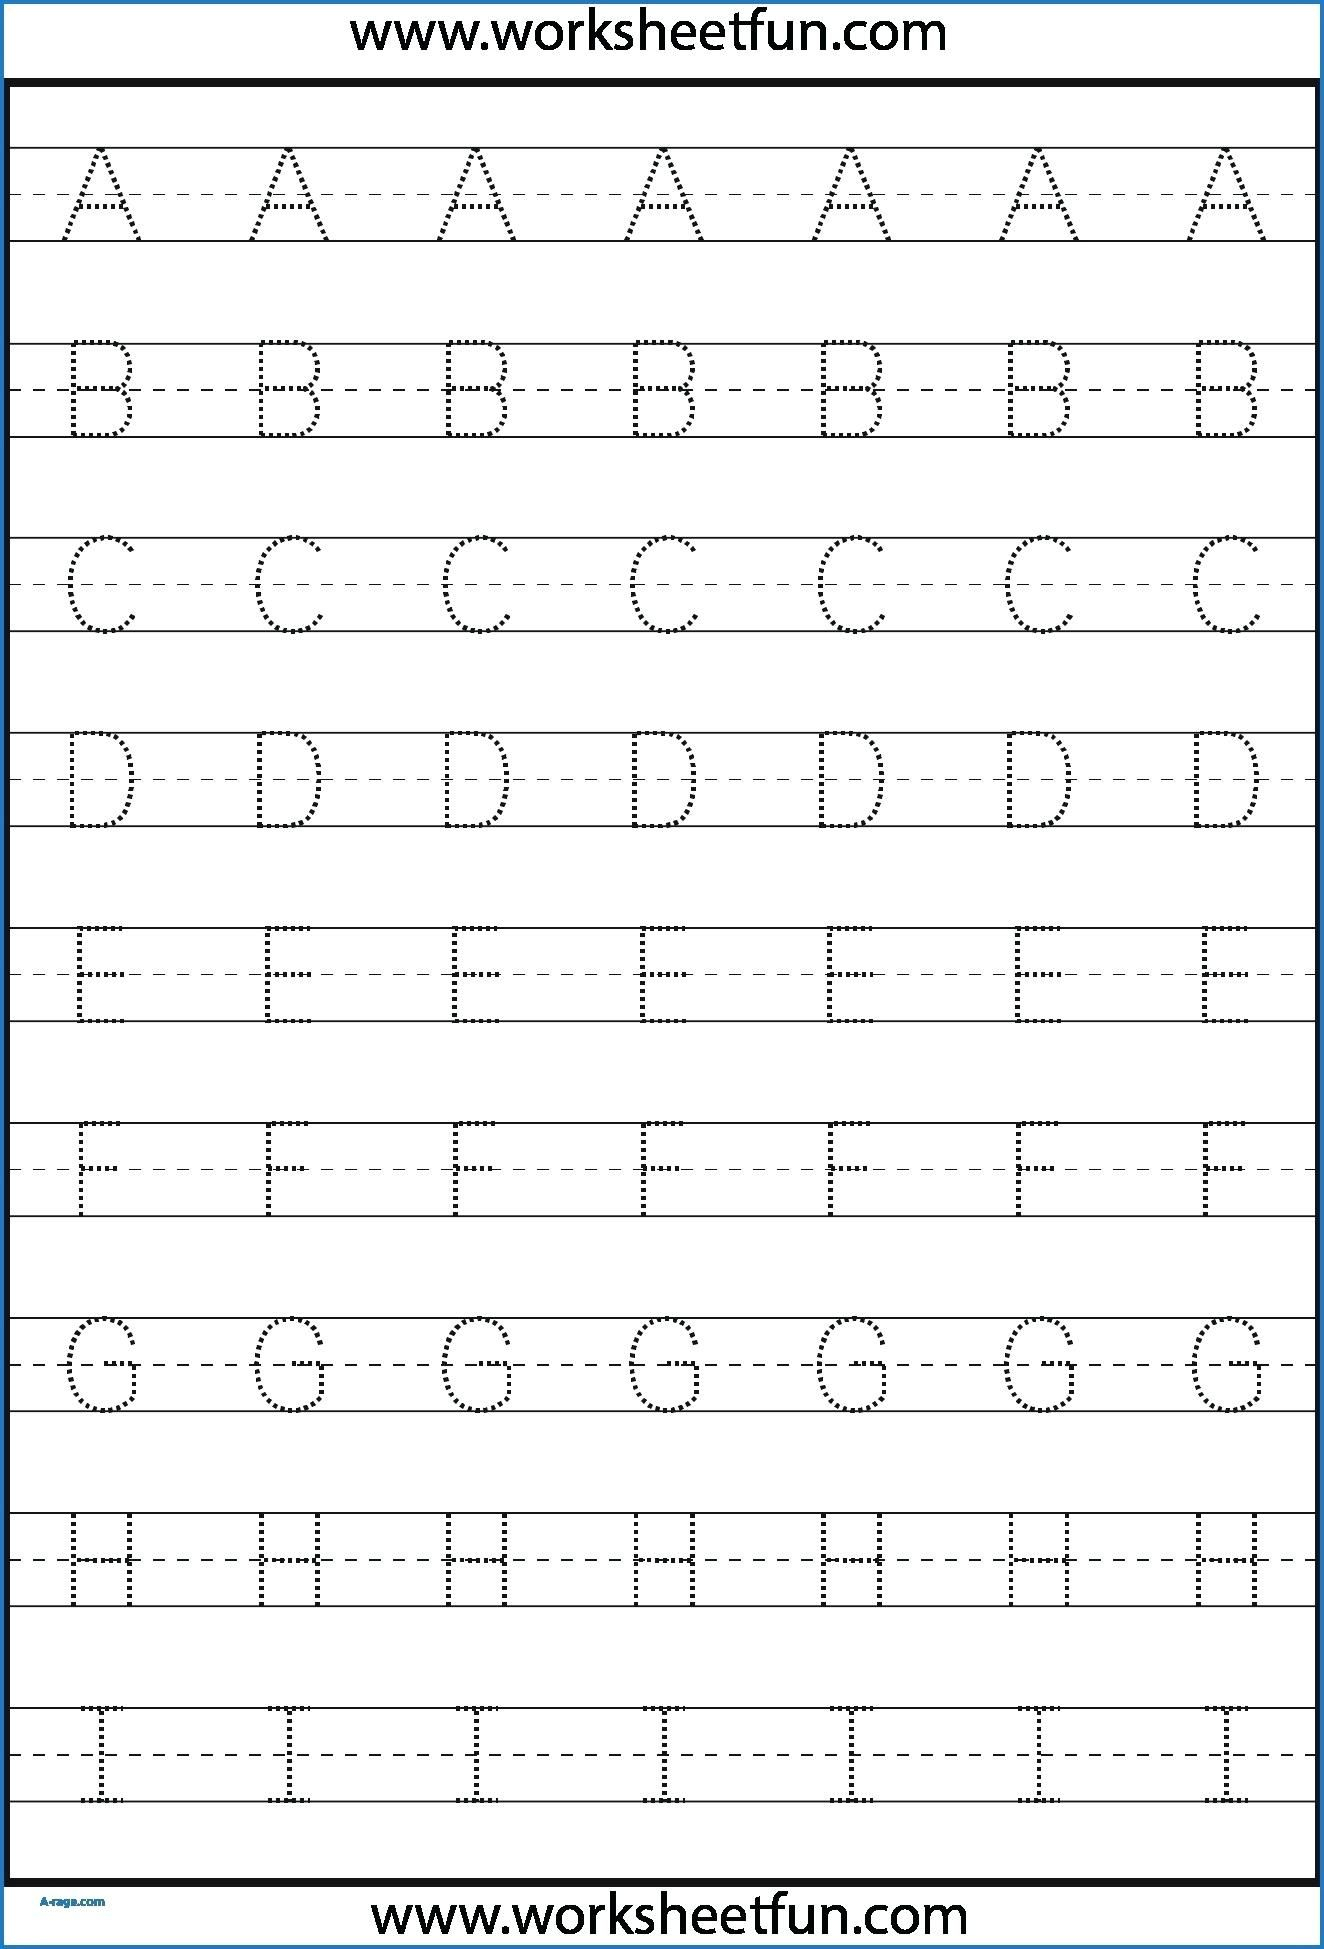 Kindergarten Letter Tracing Worksheets Pdf - Wallpaper Image in Letter Tracing Worksheets Kindergarten Pdf